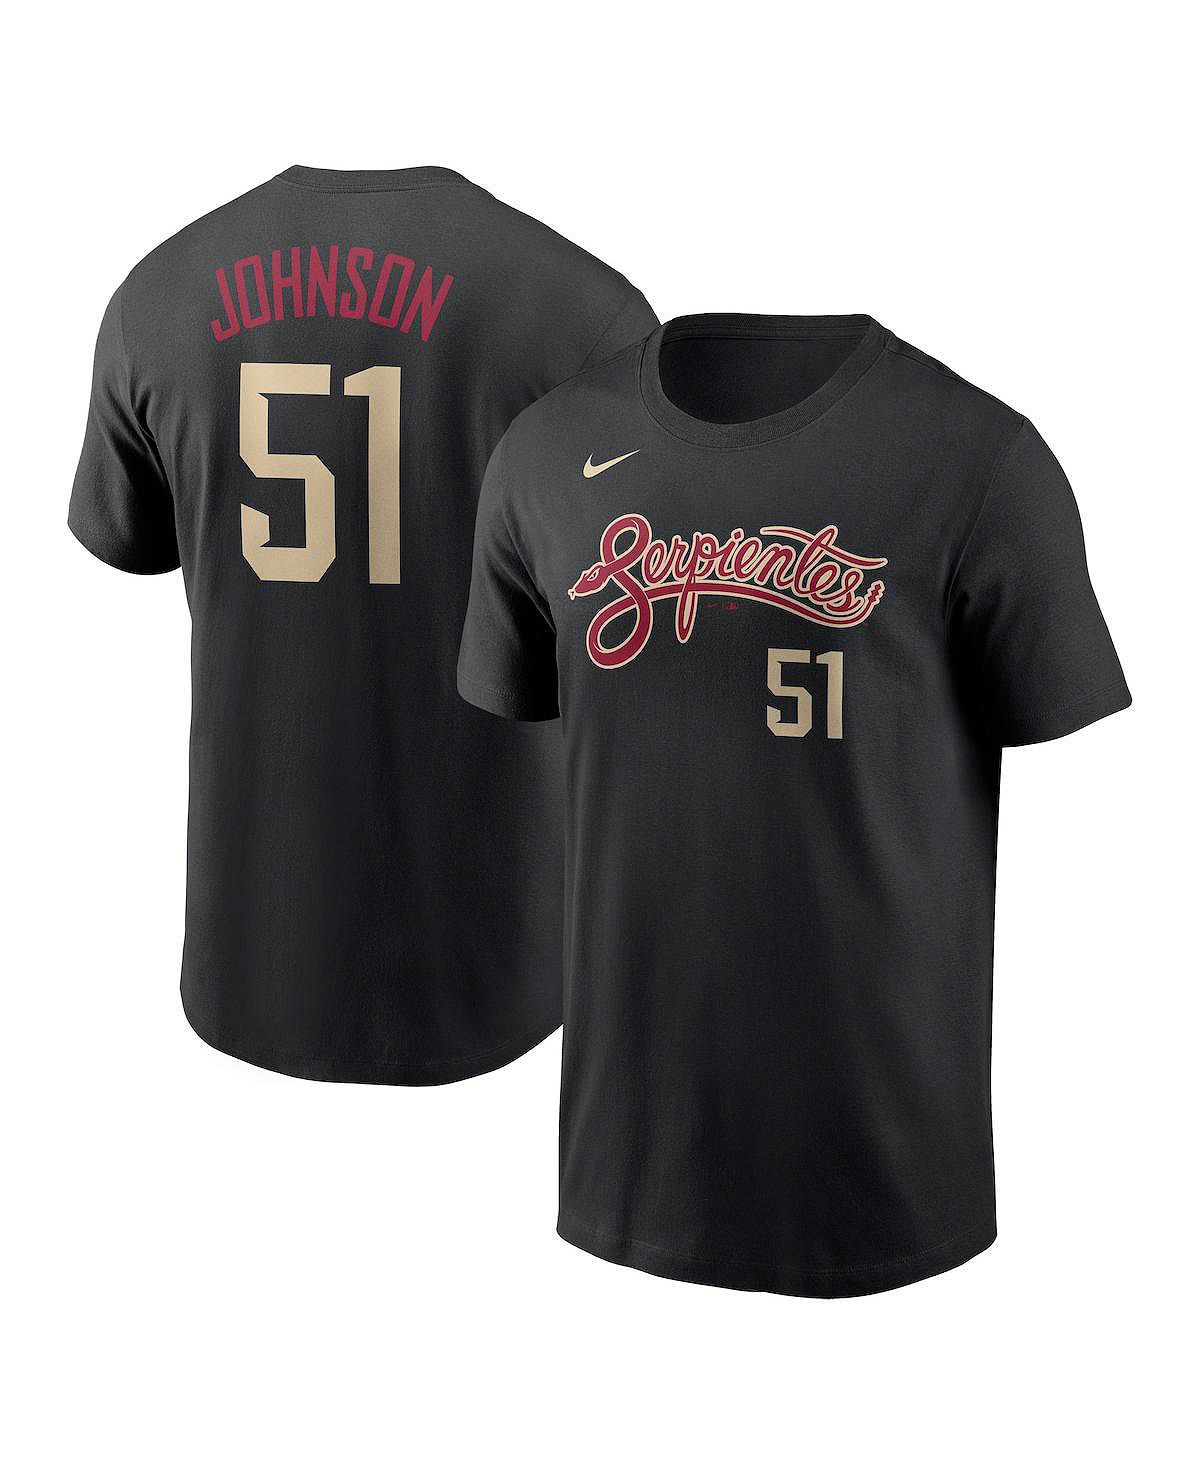 Мужская черная футболка Randy Johnson Arizona Diamondbacks City Connect с именем и номером Nike johnson nicole big city adventures